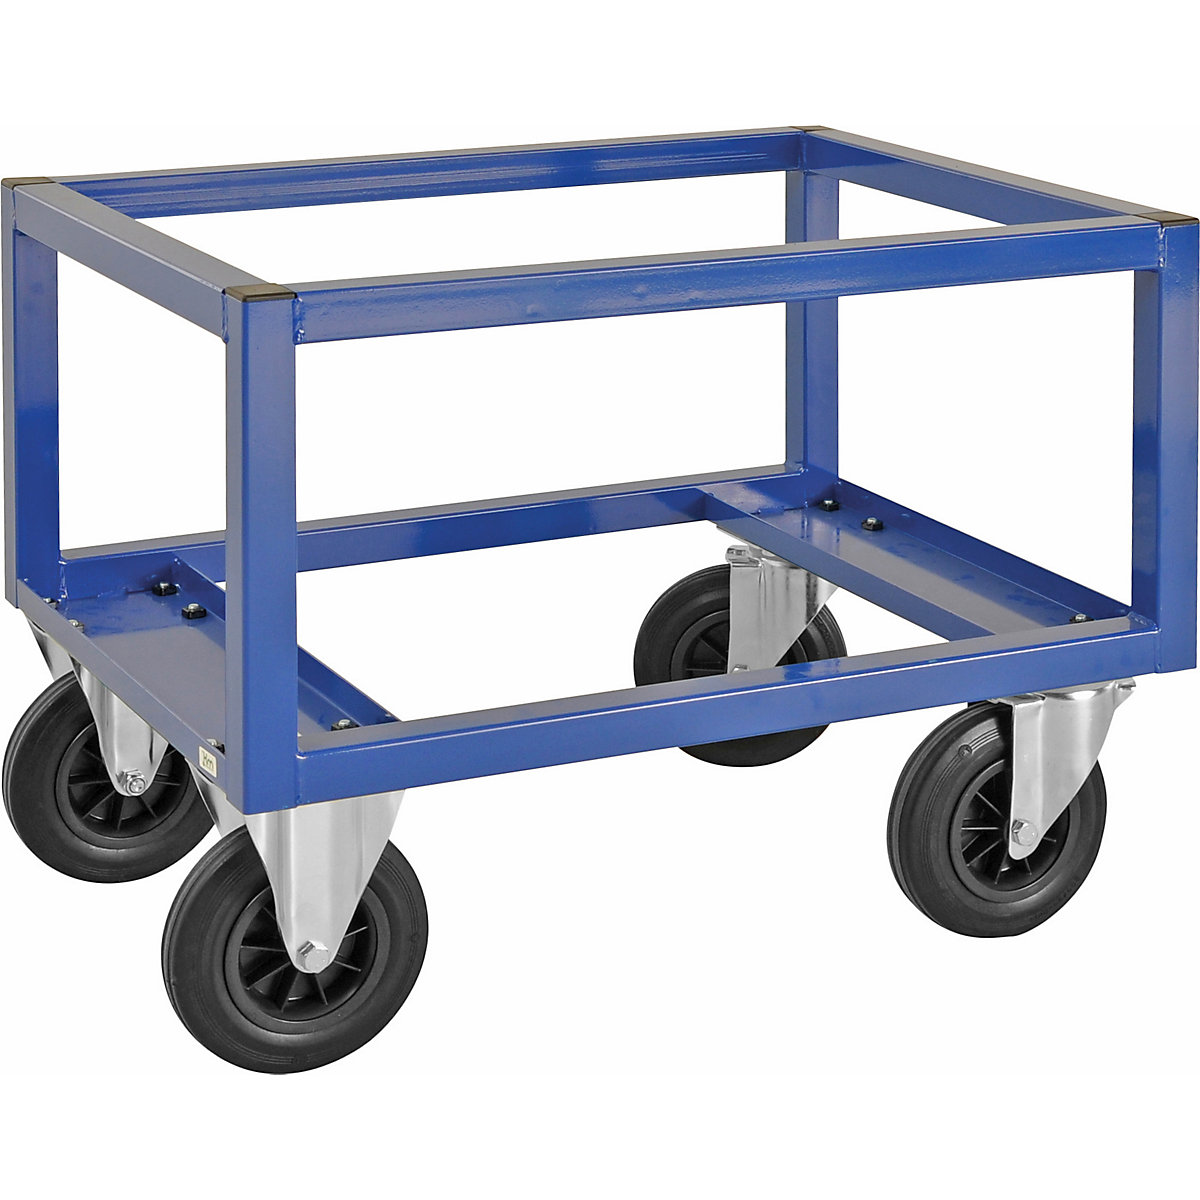 Transportni voziček za palete KM221 – Kongamek, DxŠxV 800 x 600 x 650 mm, modre barve, 2 vrtljivi in 2 fiksni kolesi, od 5 kosov-5